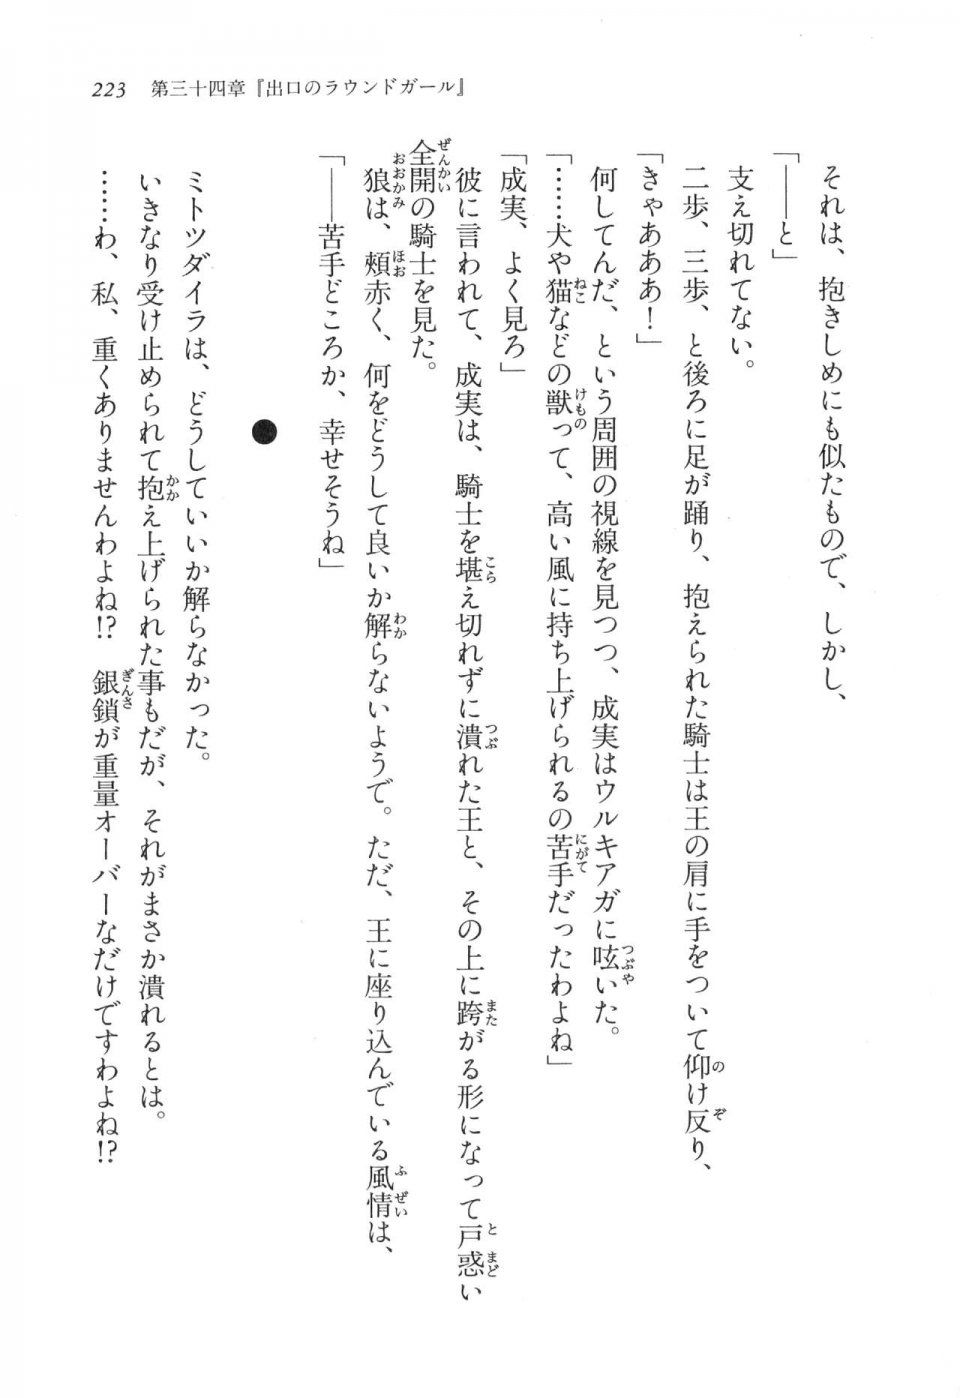 Kyoukai Senjou no Horizon LN Vol 17(7B) - Photo #223